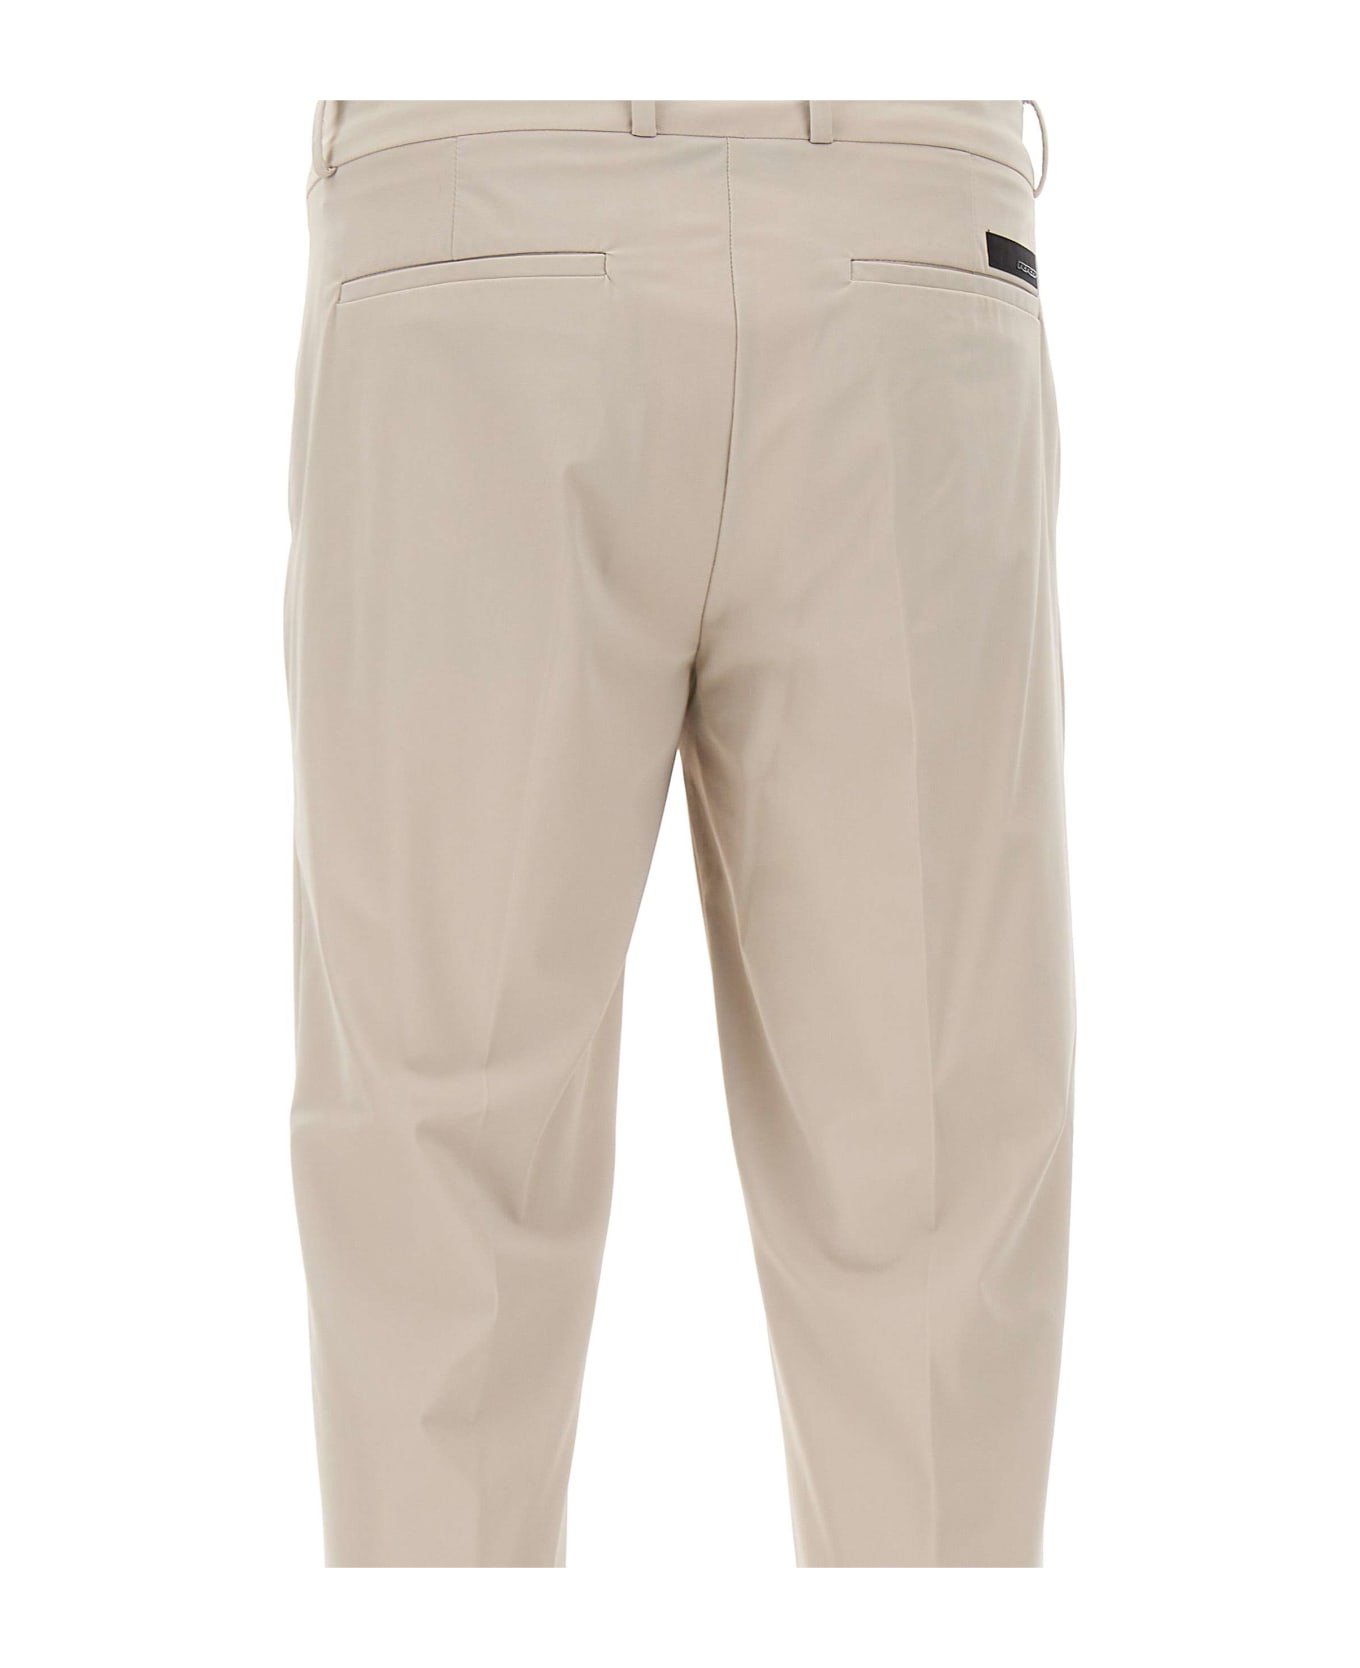 RRD - Roberto Ricci Design Men's Trousers "revo Chino" - BEIGE ボトムス